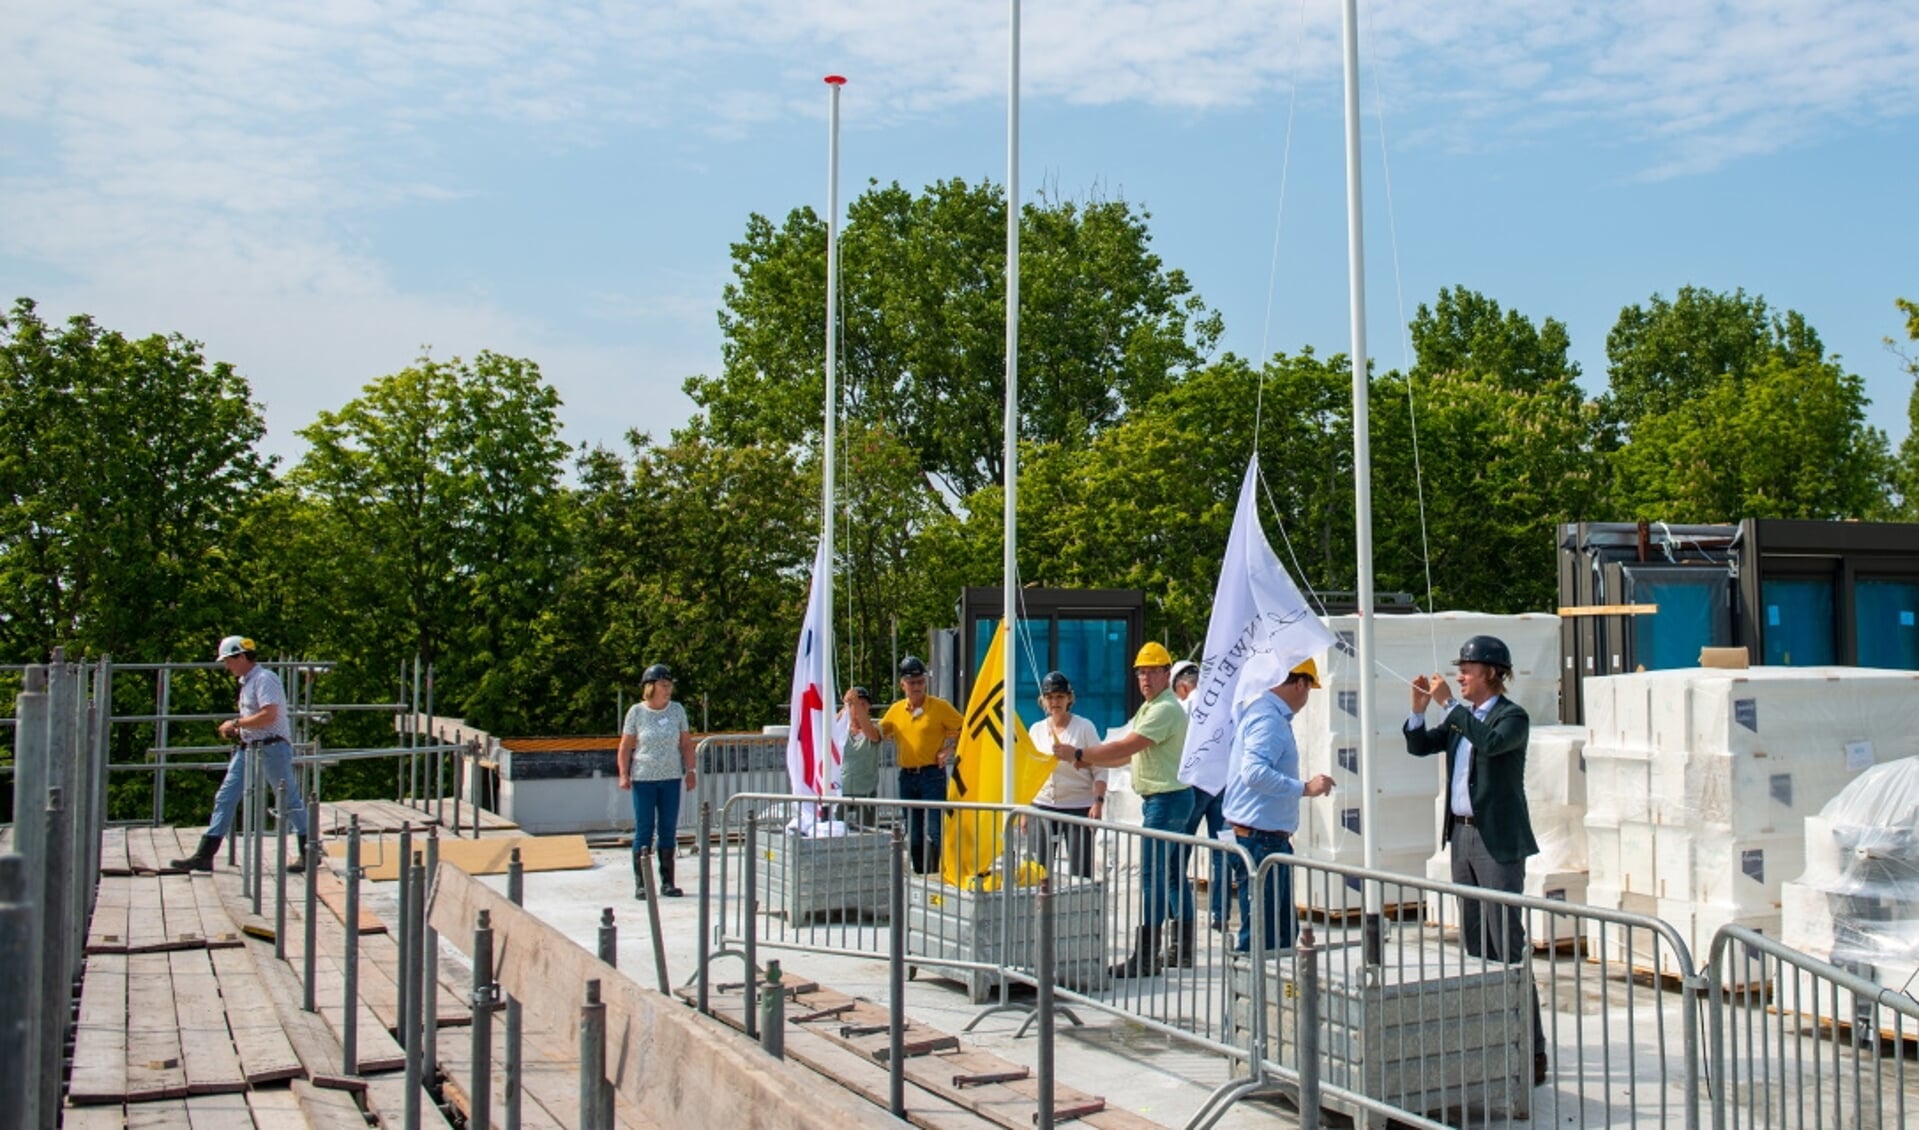  De vlaggen gaan in top door Pieter van Zeben, Edwin Kolkhuis Tanke en Hein Trebbe. | Foto: PR.